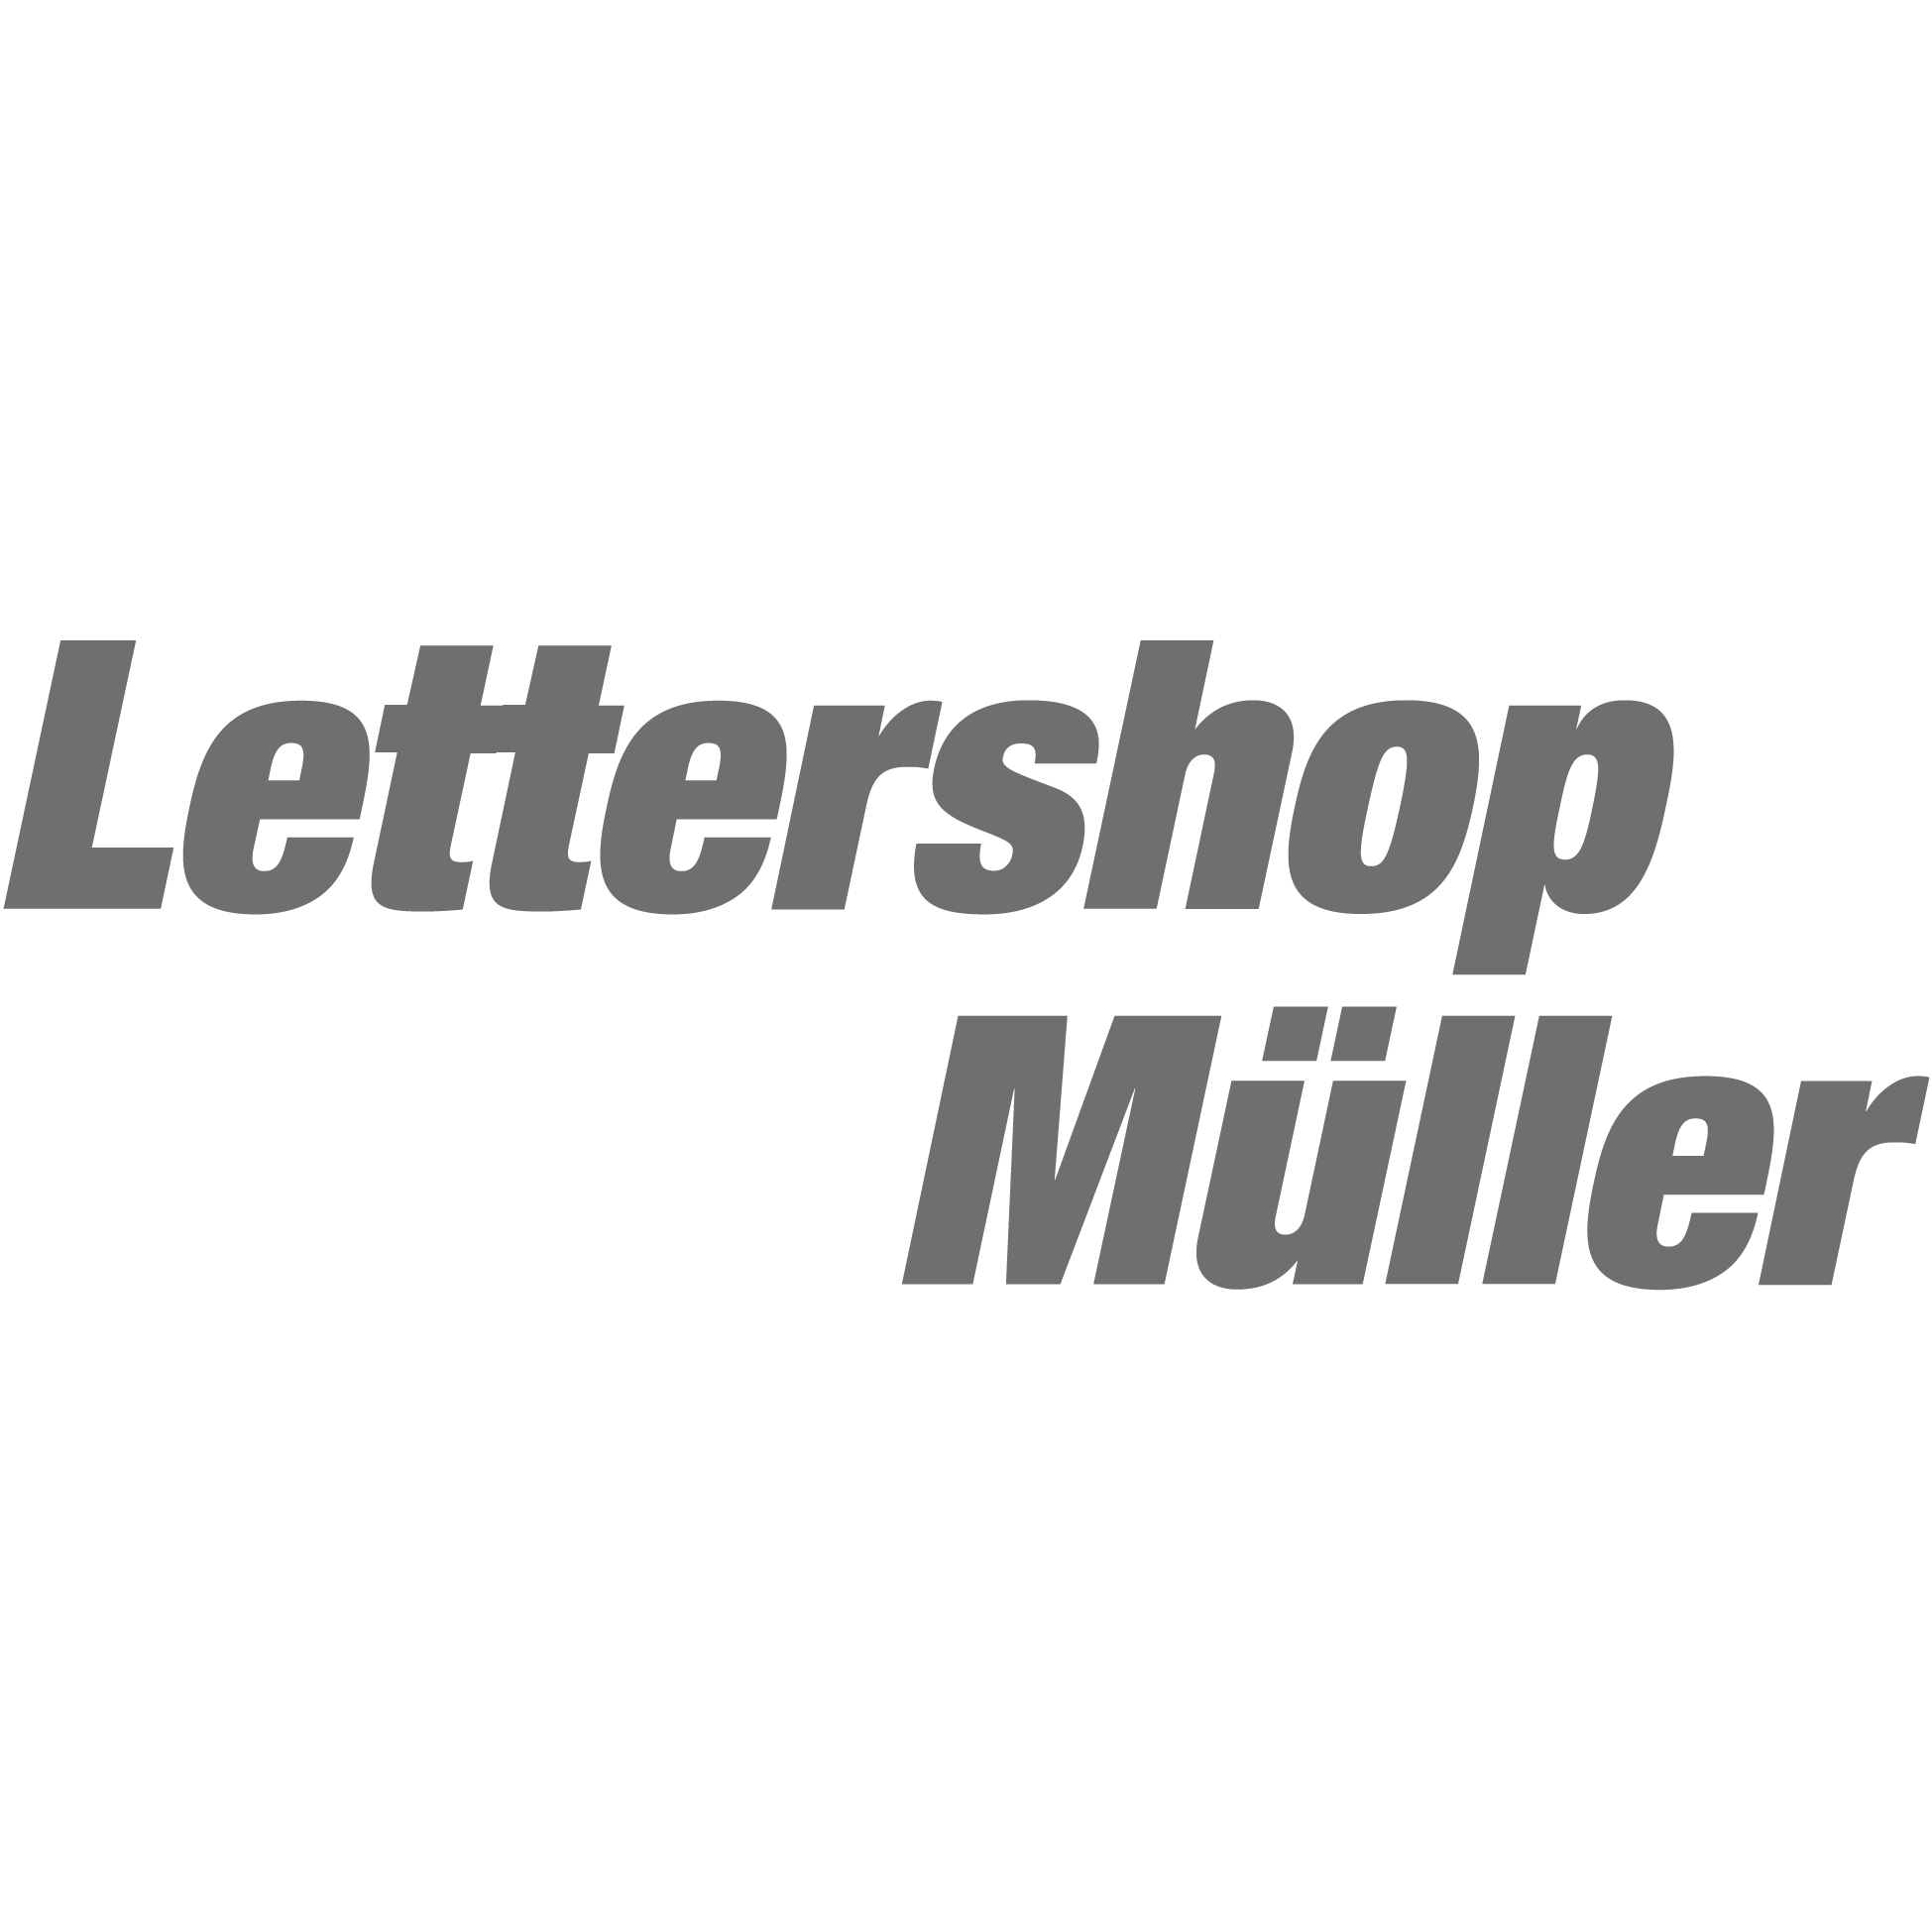 Lettershop Müller